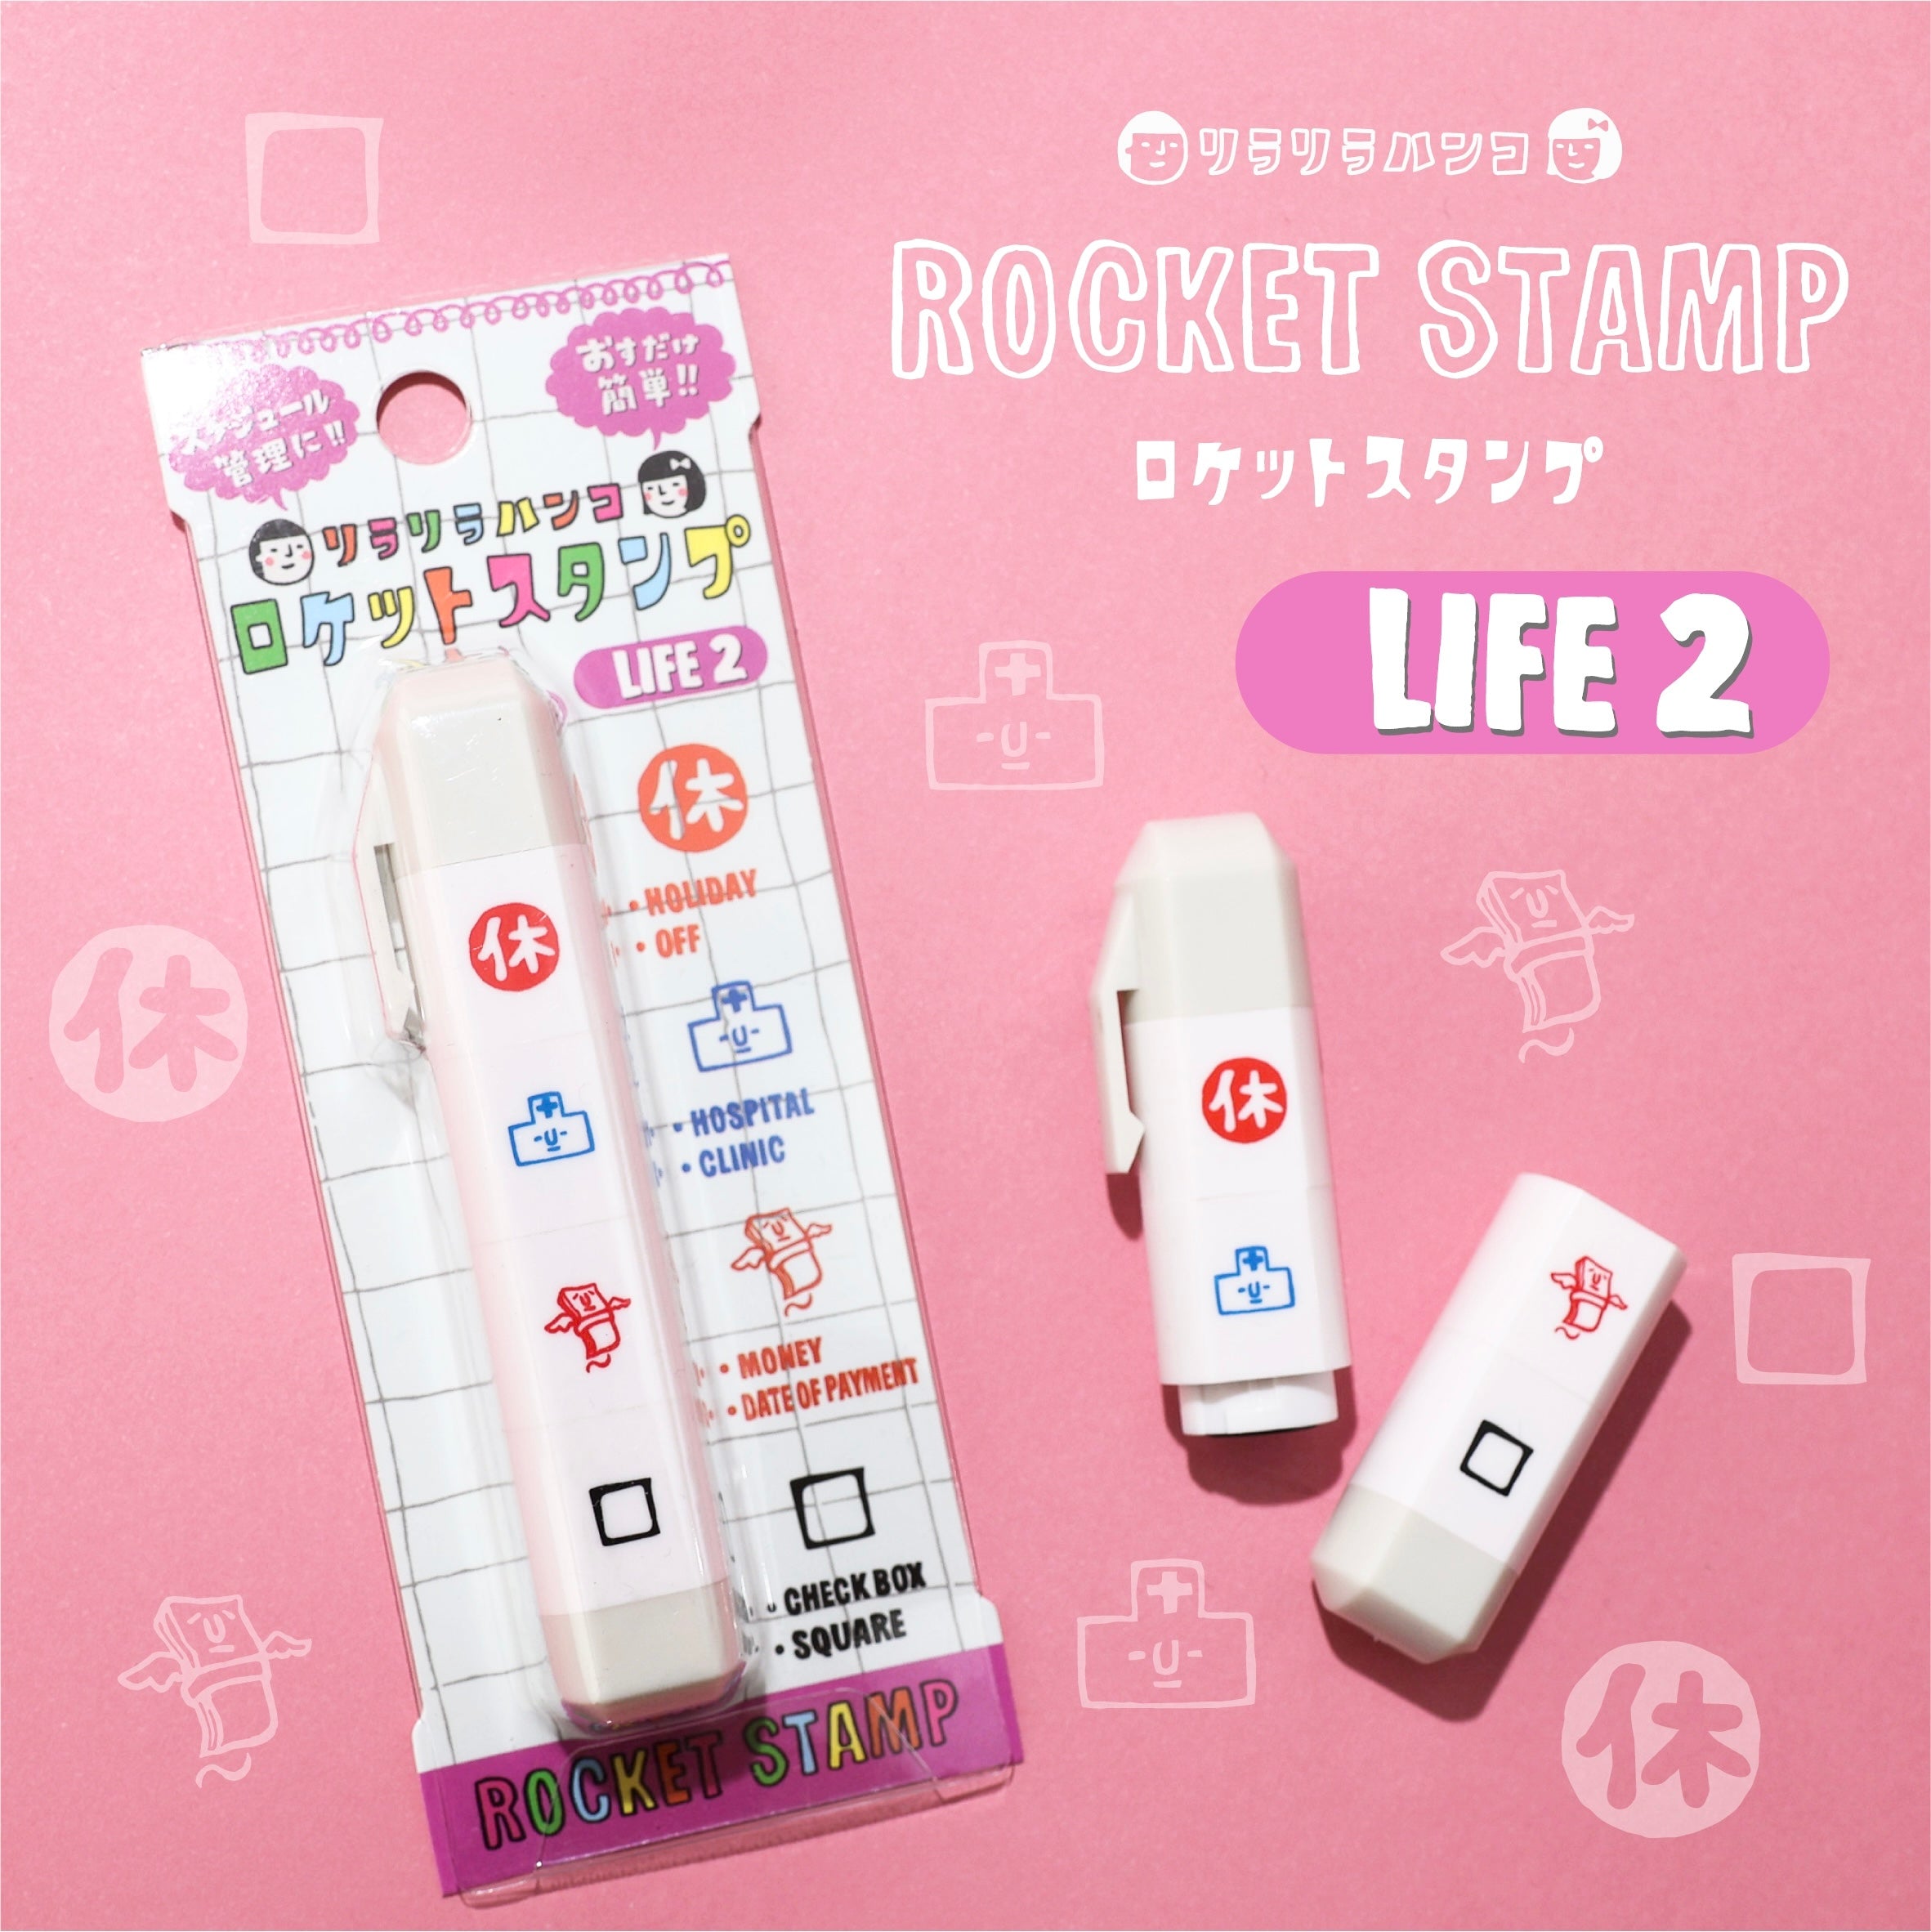 Rocket Stamp (LIFE2)